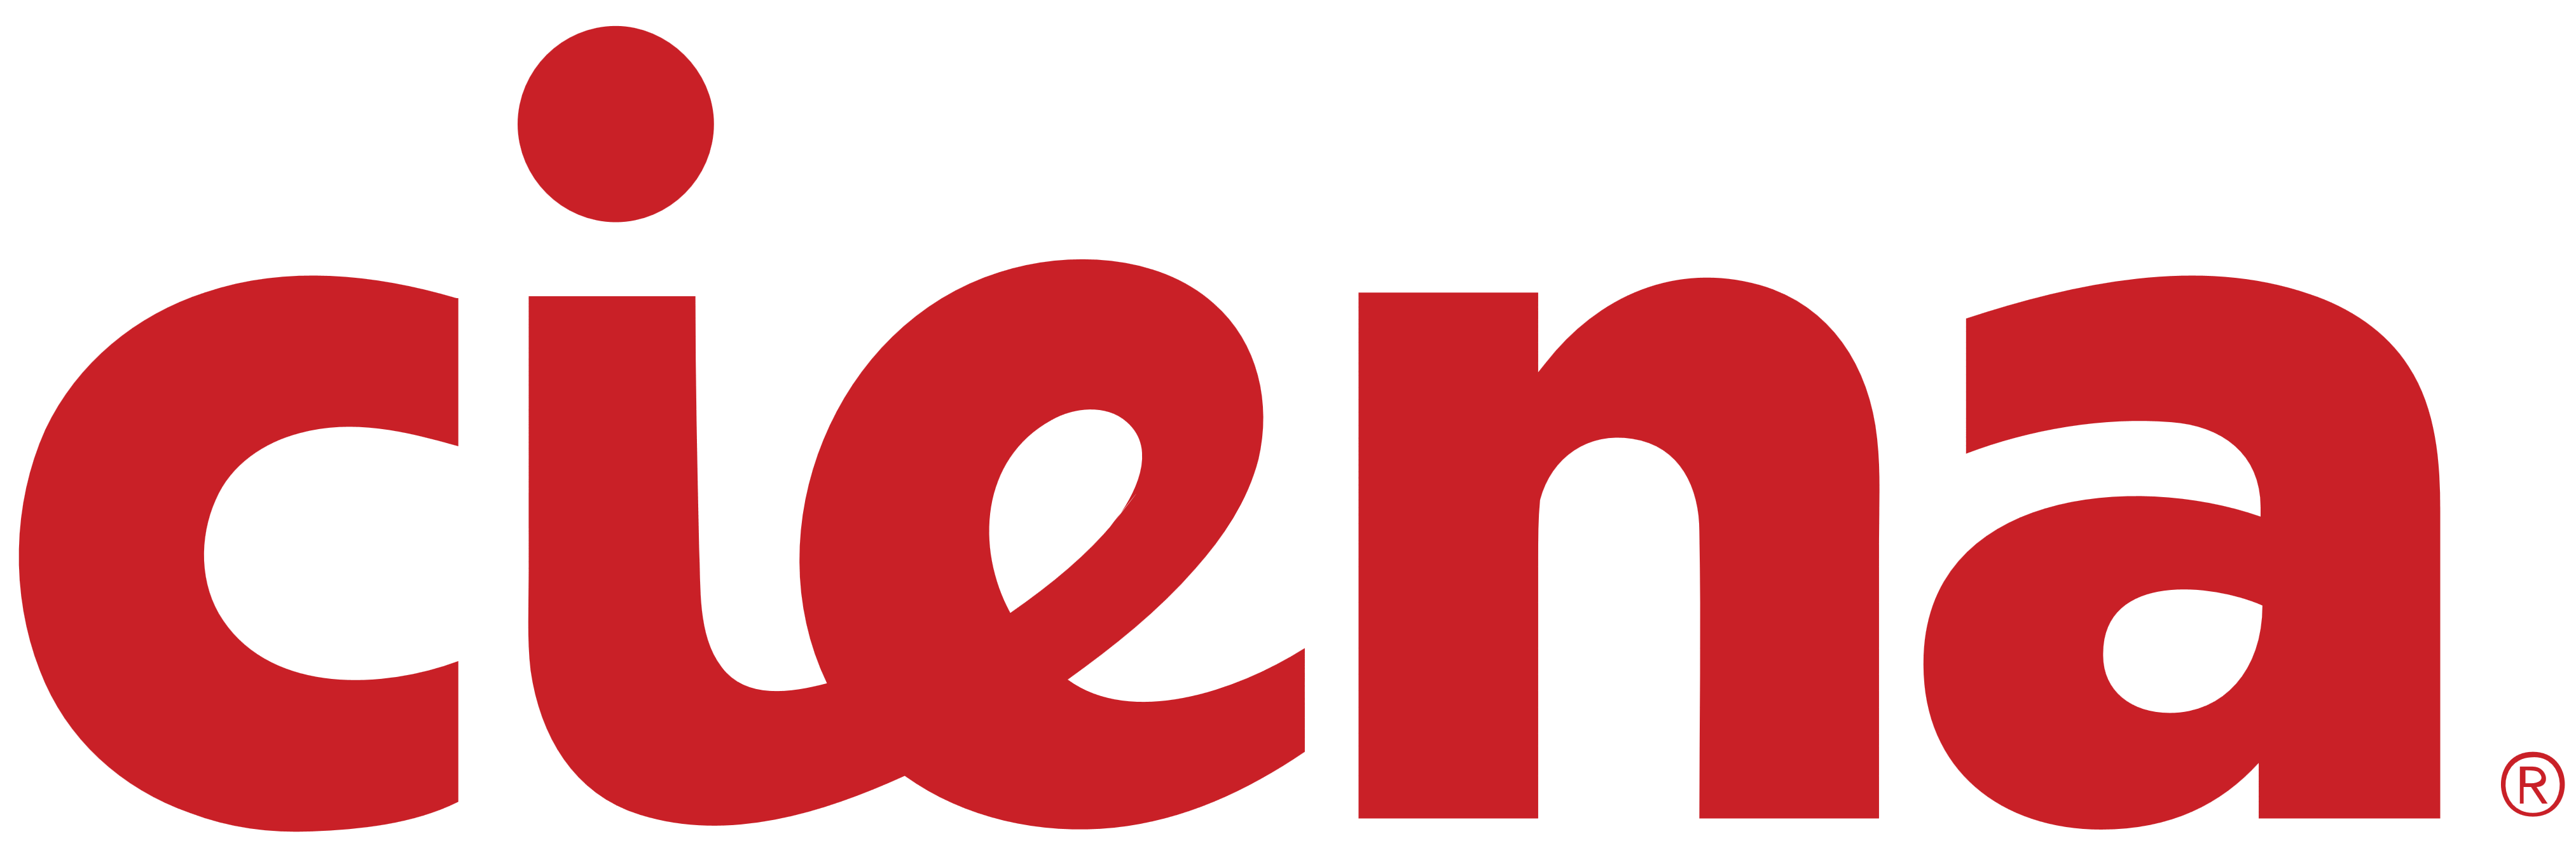 Ciena Corporation logo